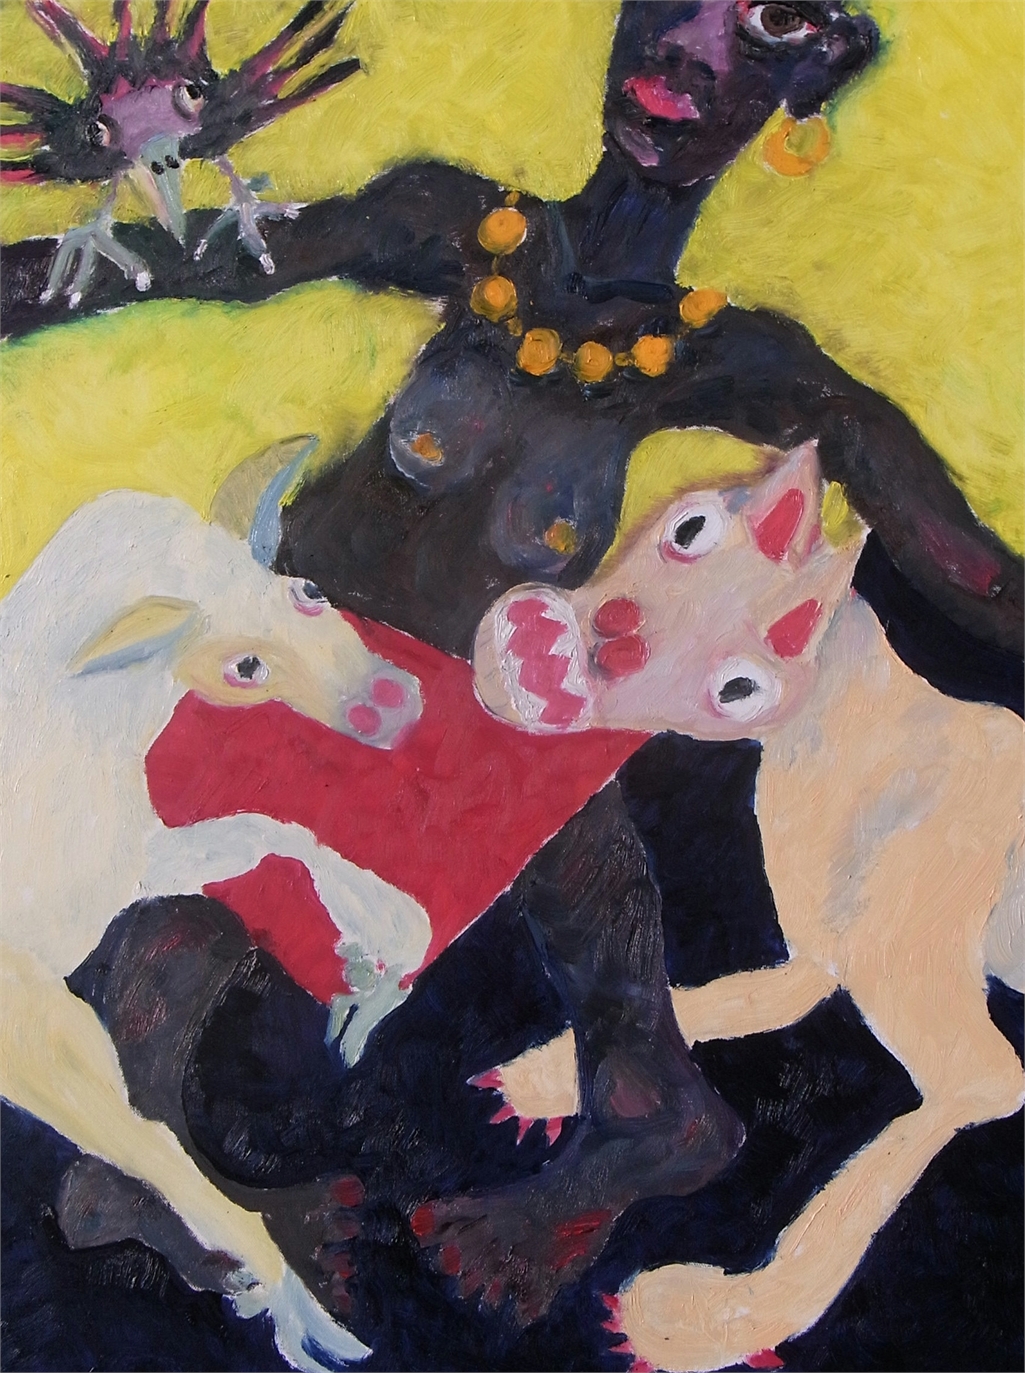 Mensch und Tier, 2015, Oel auf Cotton, 60x80cm